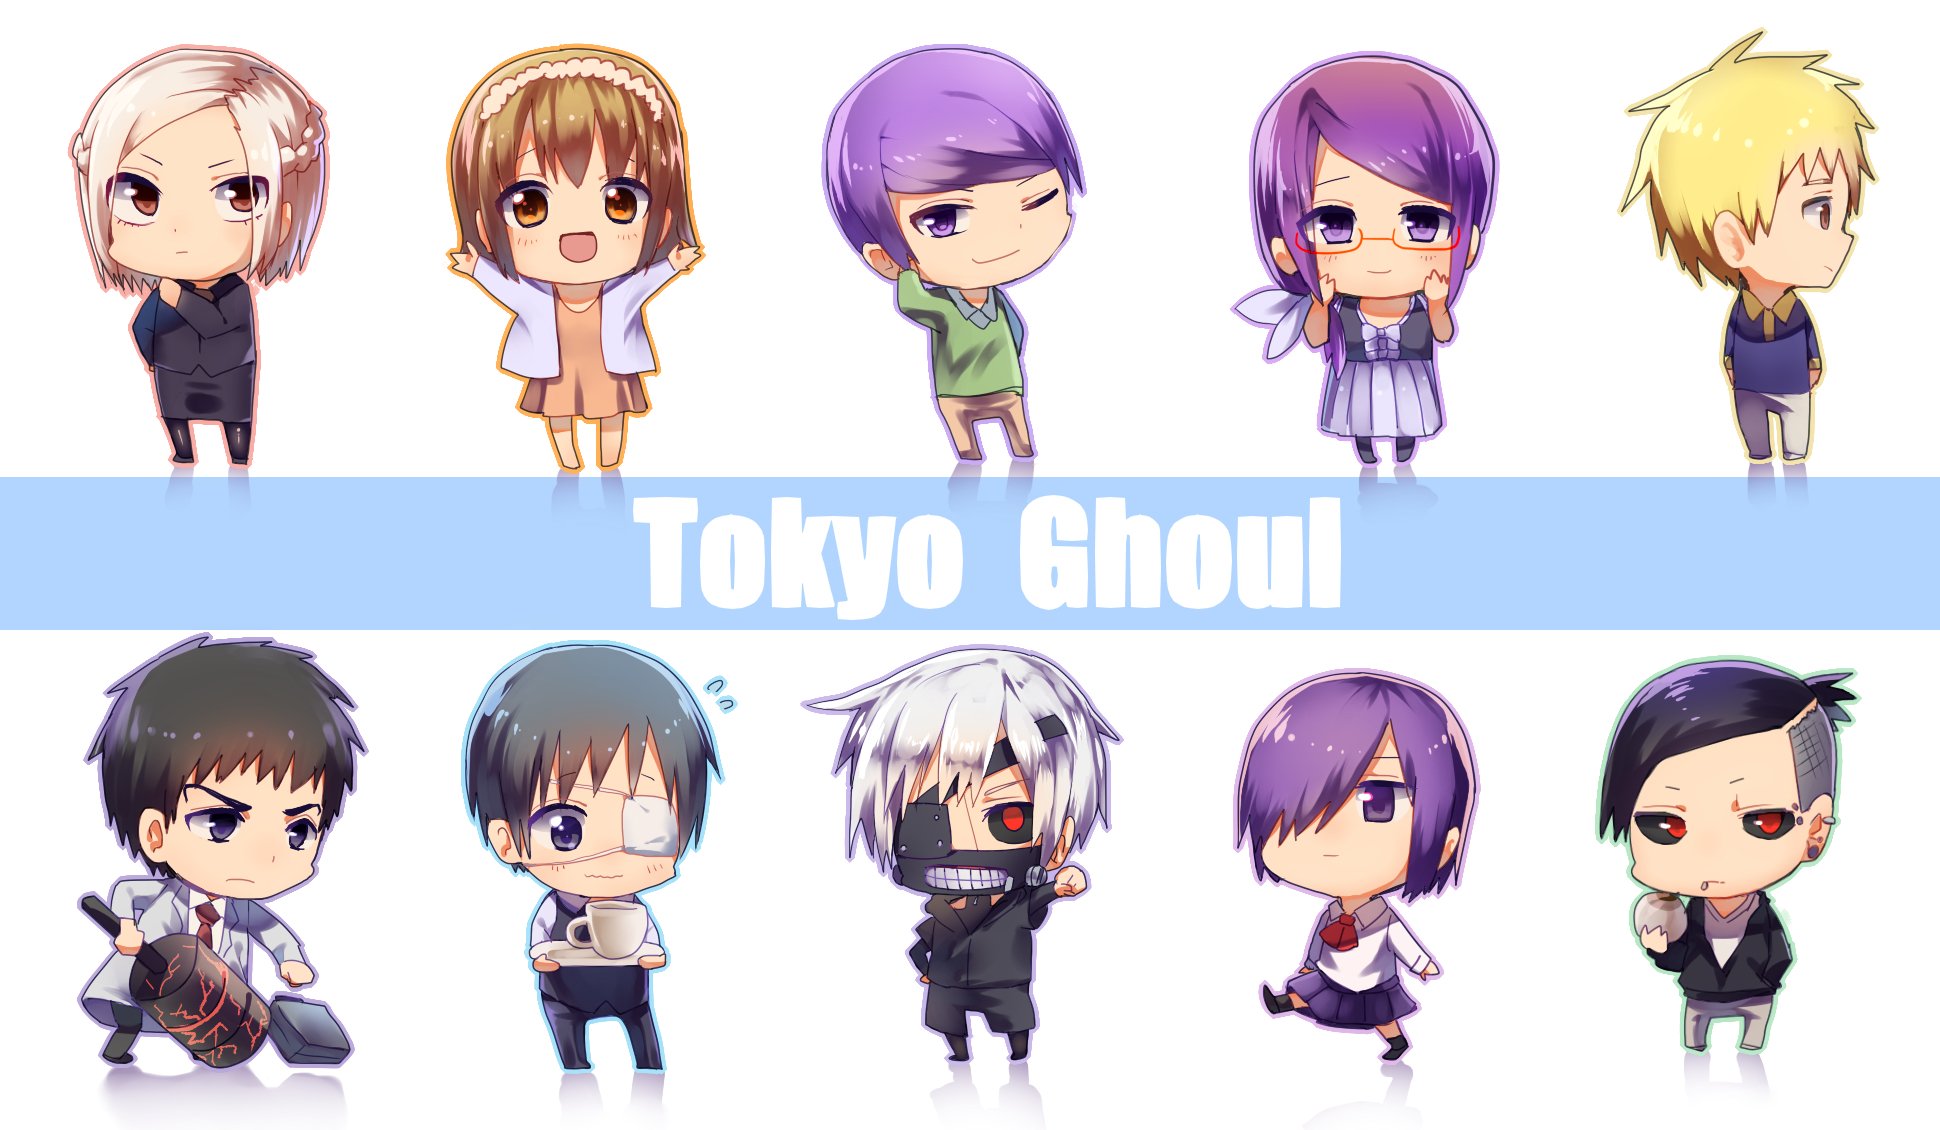 tokyo, Kushu, Anime, Manga, Artwork, Ghoul Wallpaper